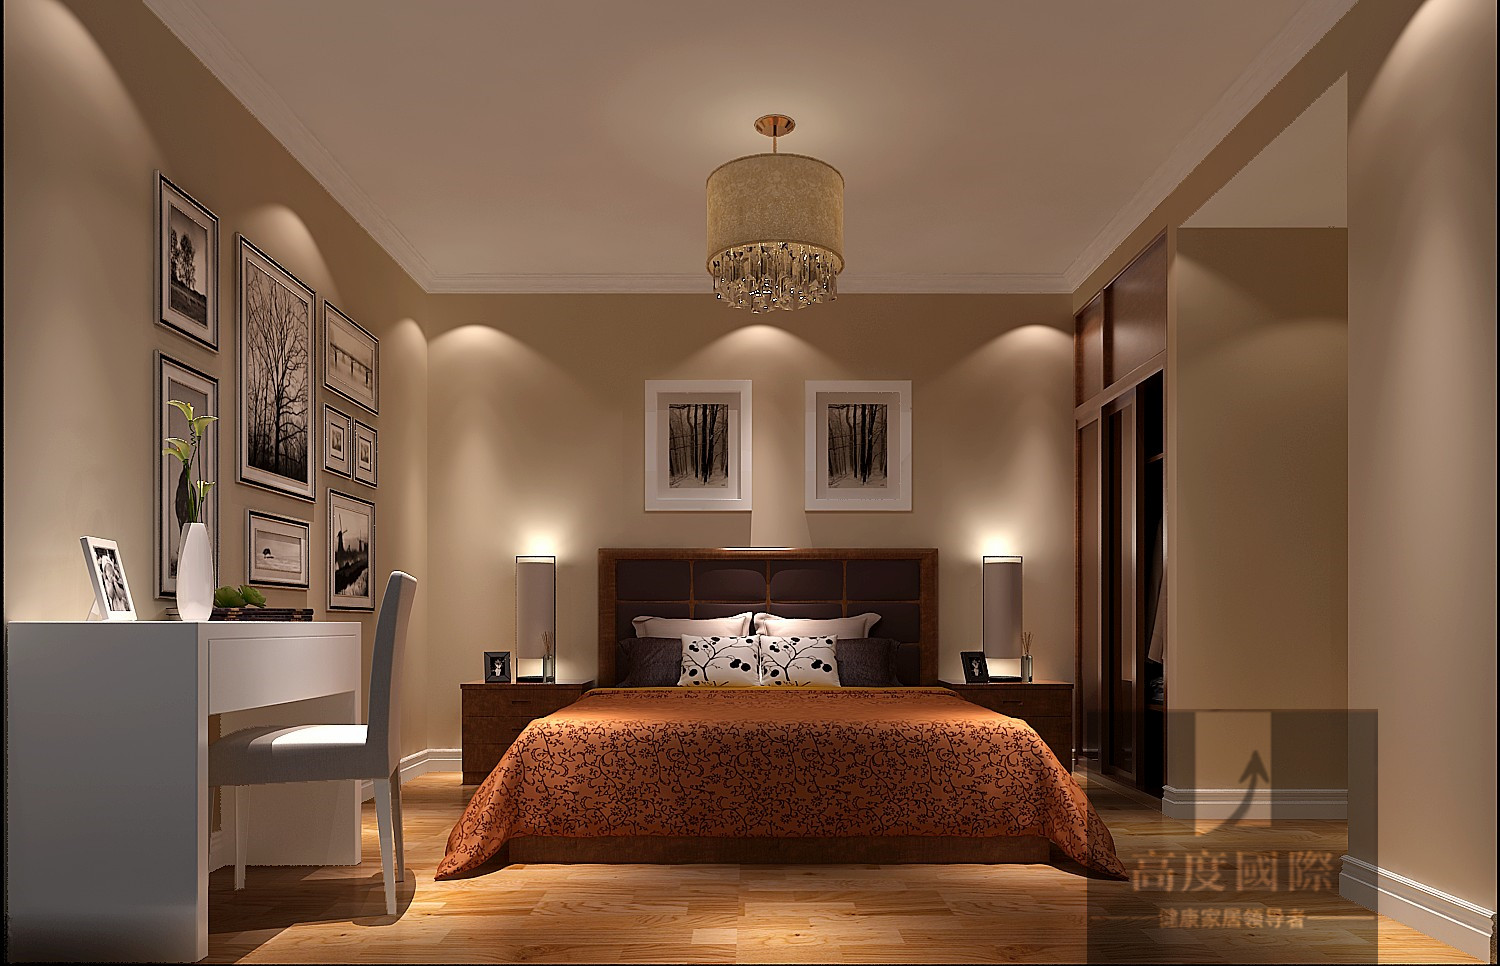 简约 欧式 二居 温馨 卧室图片来自高度国际装饰韩冰在润泽公馆88平米简约欧式的分享